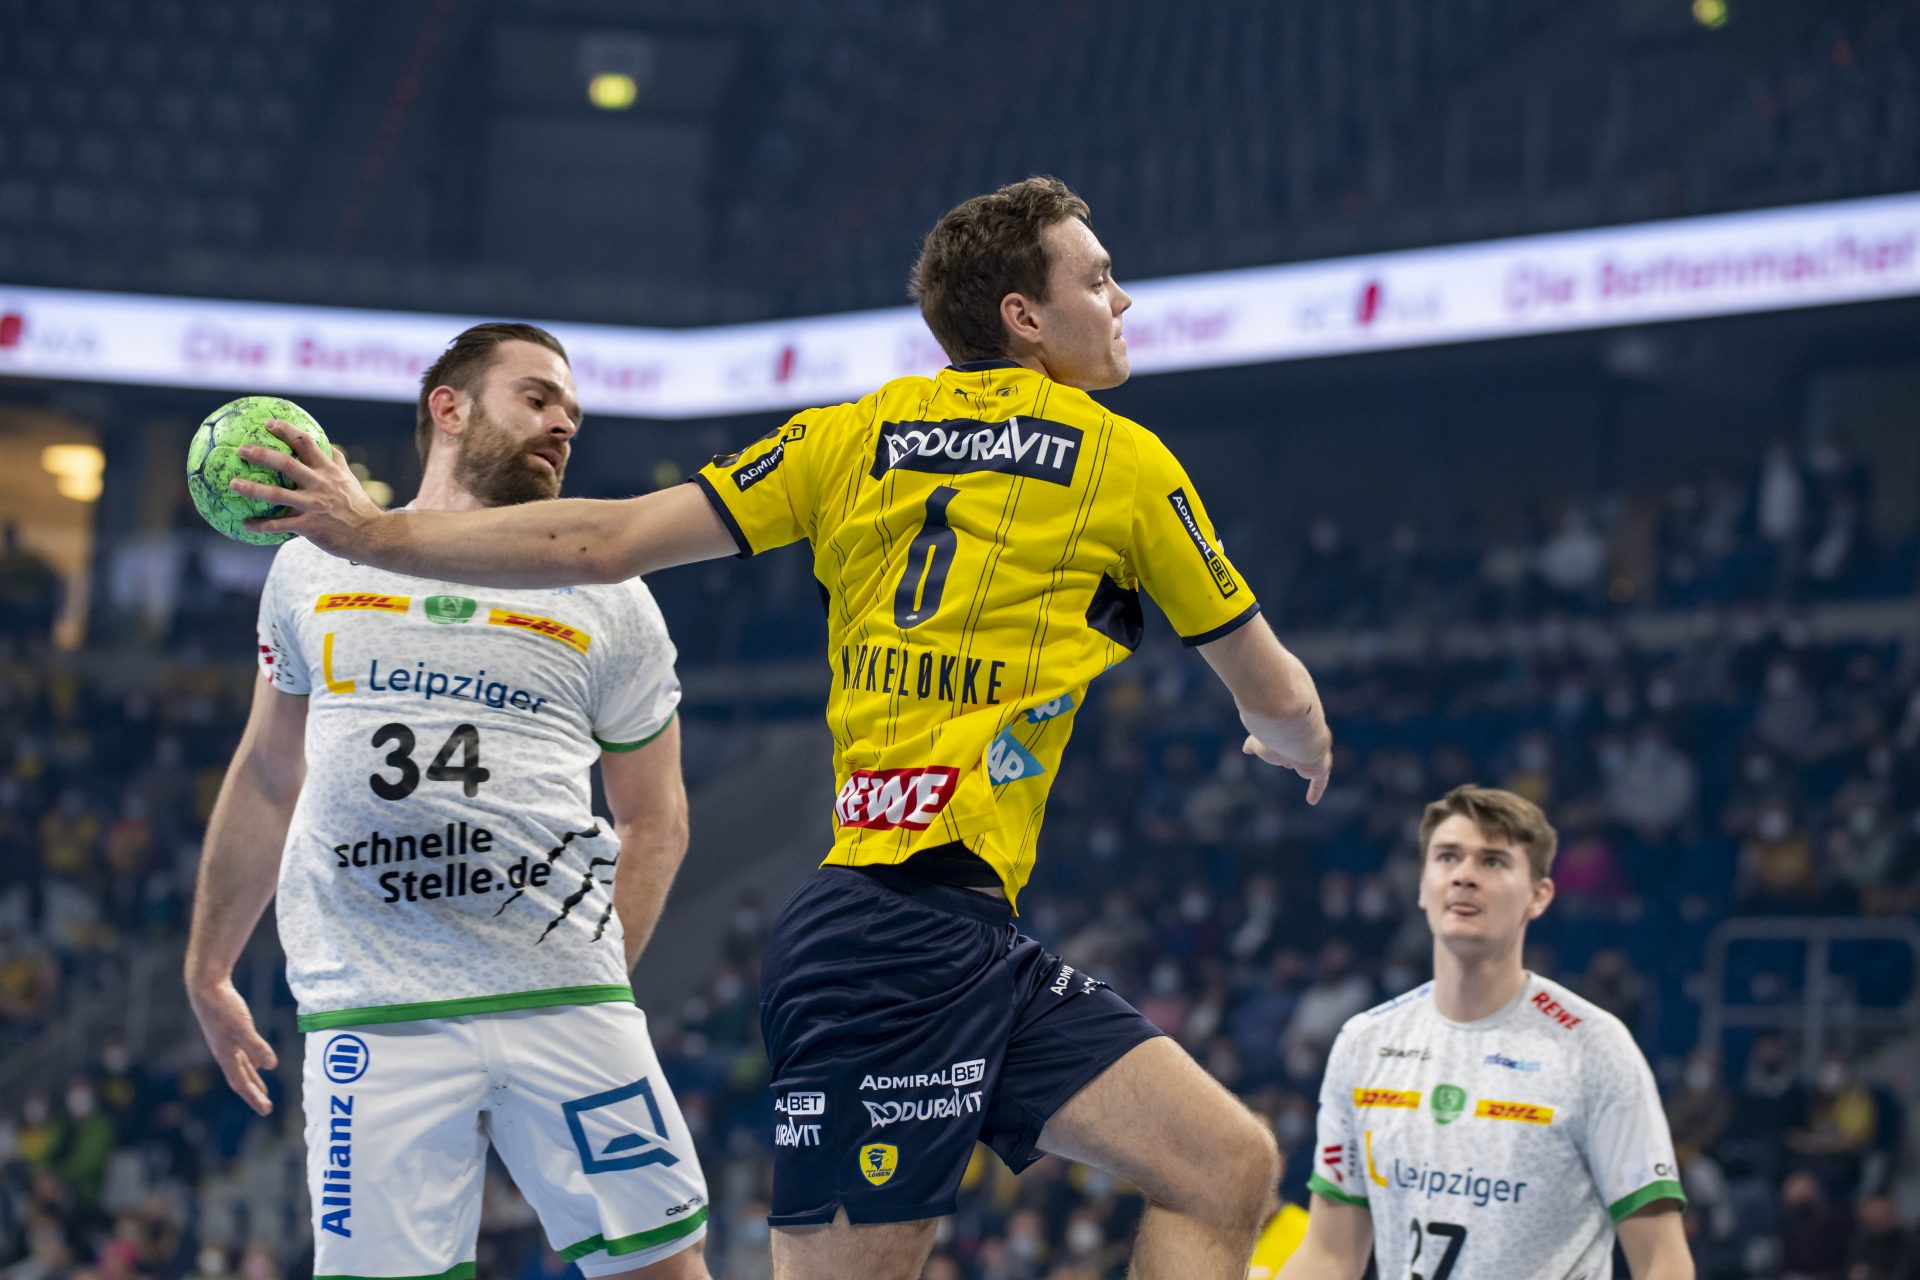 Goldene Aussichten für Löwe Lagergren: Schweden steht im Finale der EHF EURO 2022 / Für Dänemark geht es um Bronze / Island verpasst Platz 5. 